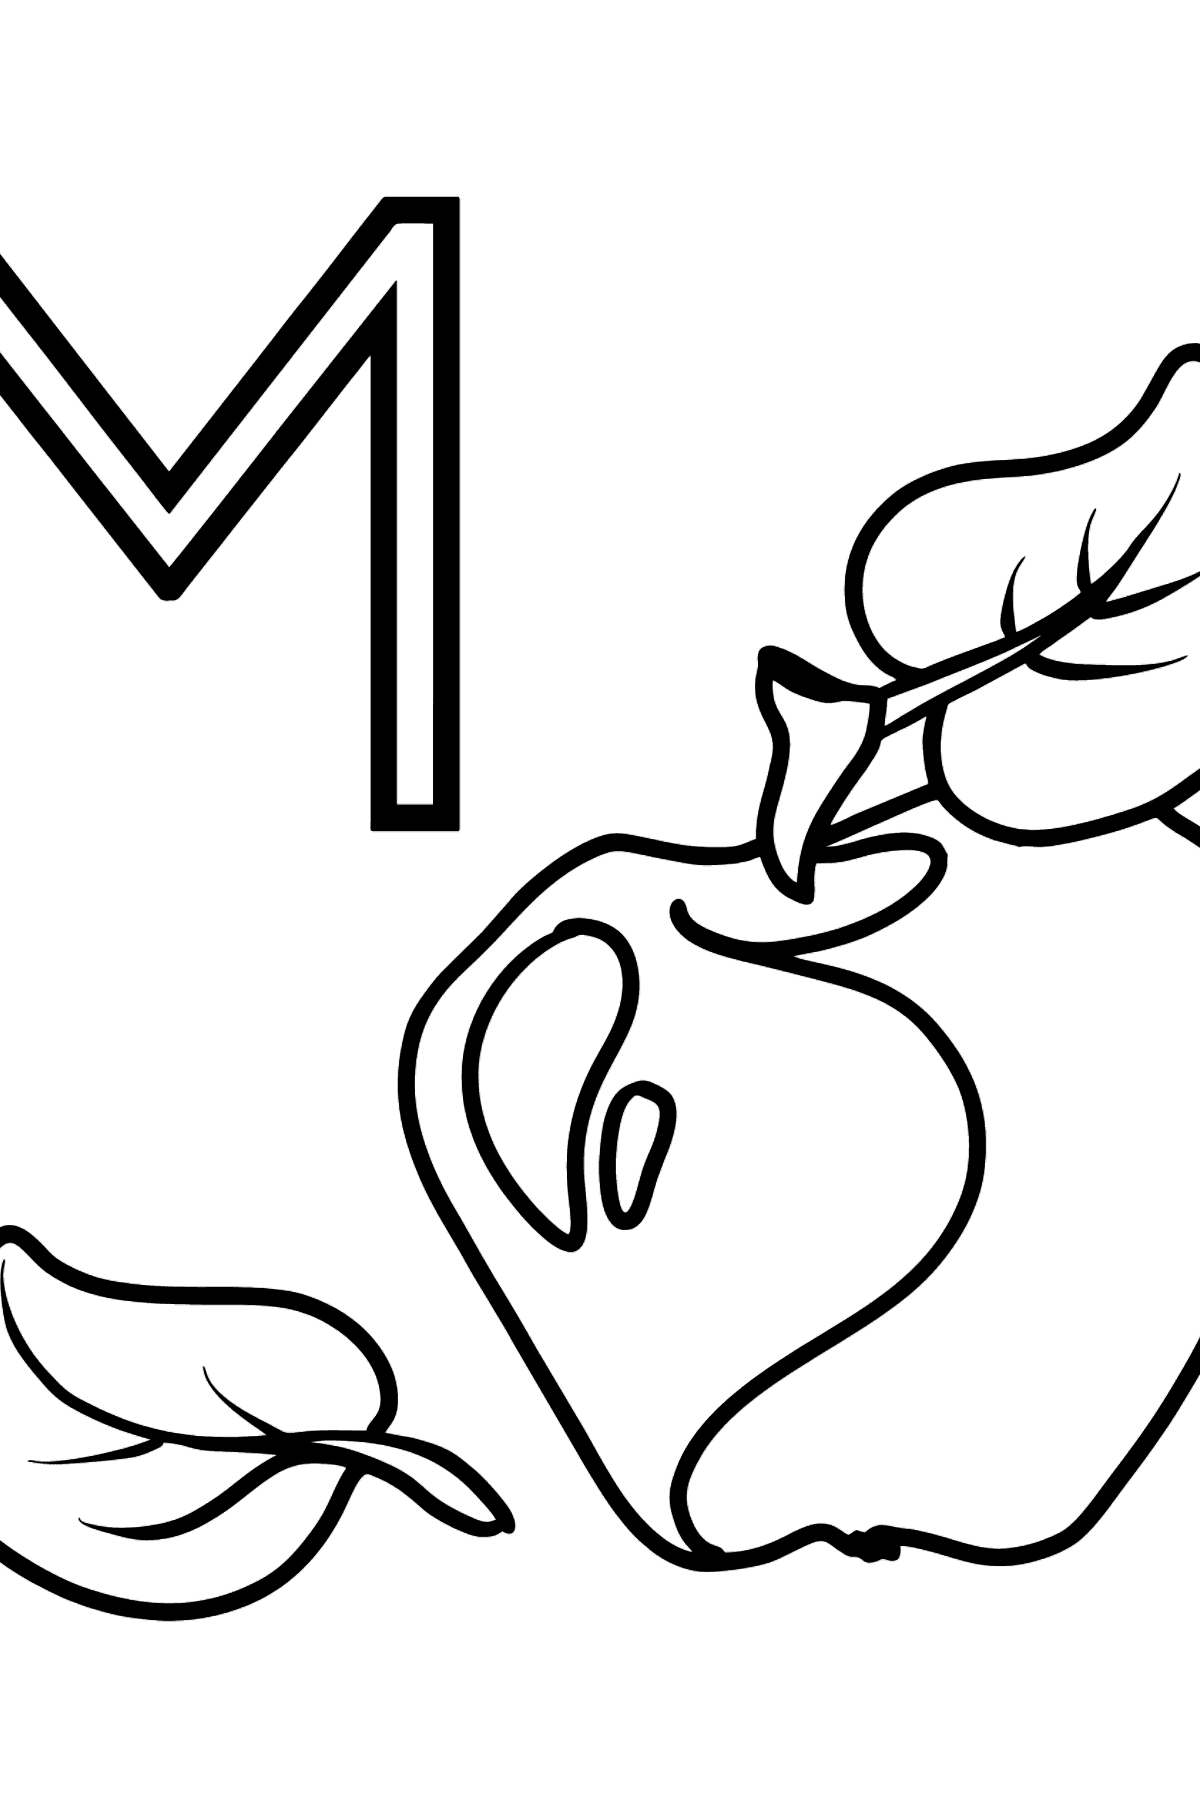 Desenho de Letra Espanhol M para colorir - MANZANA - Imagens para Colorir para Crianças